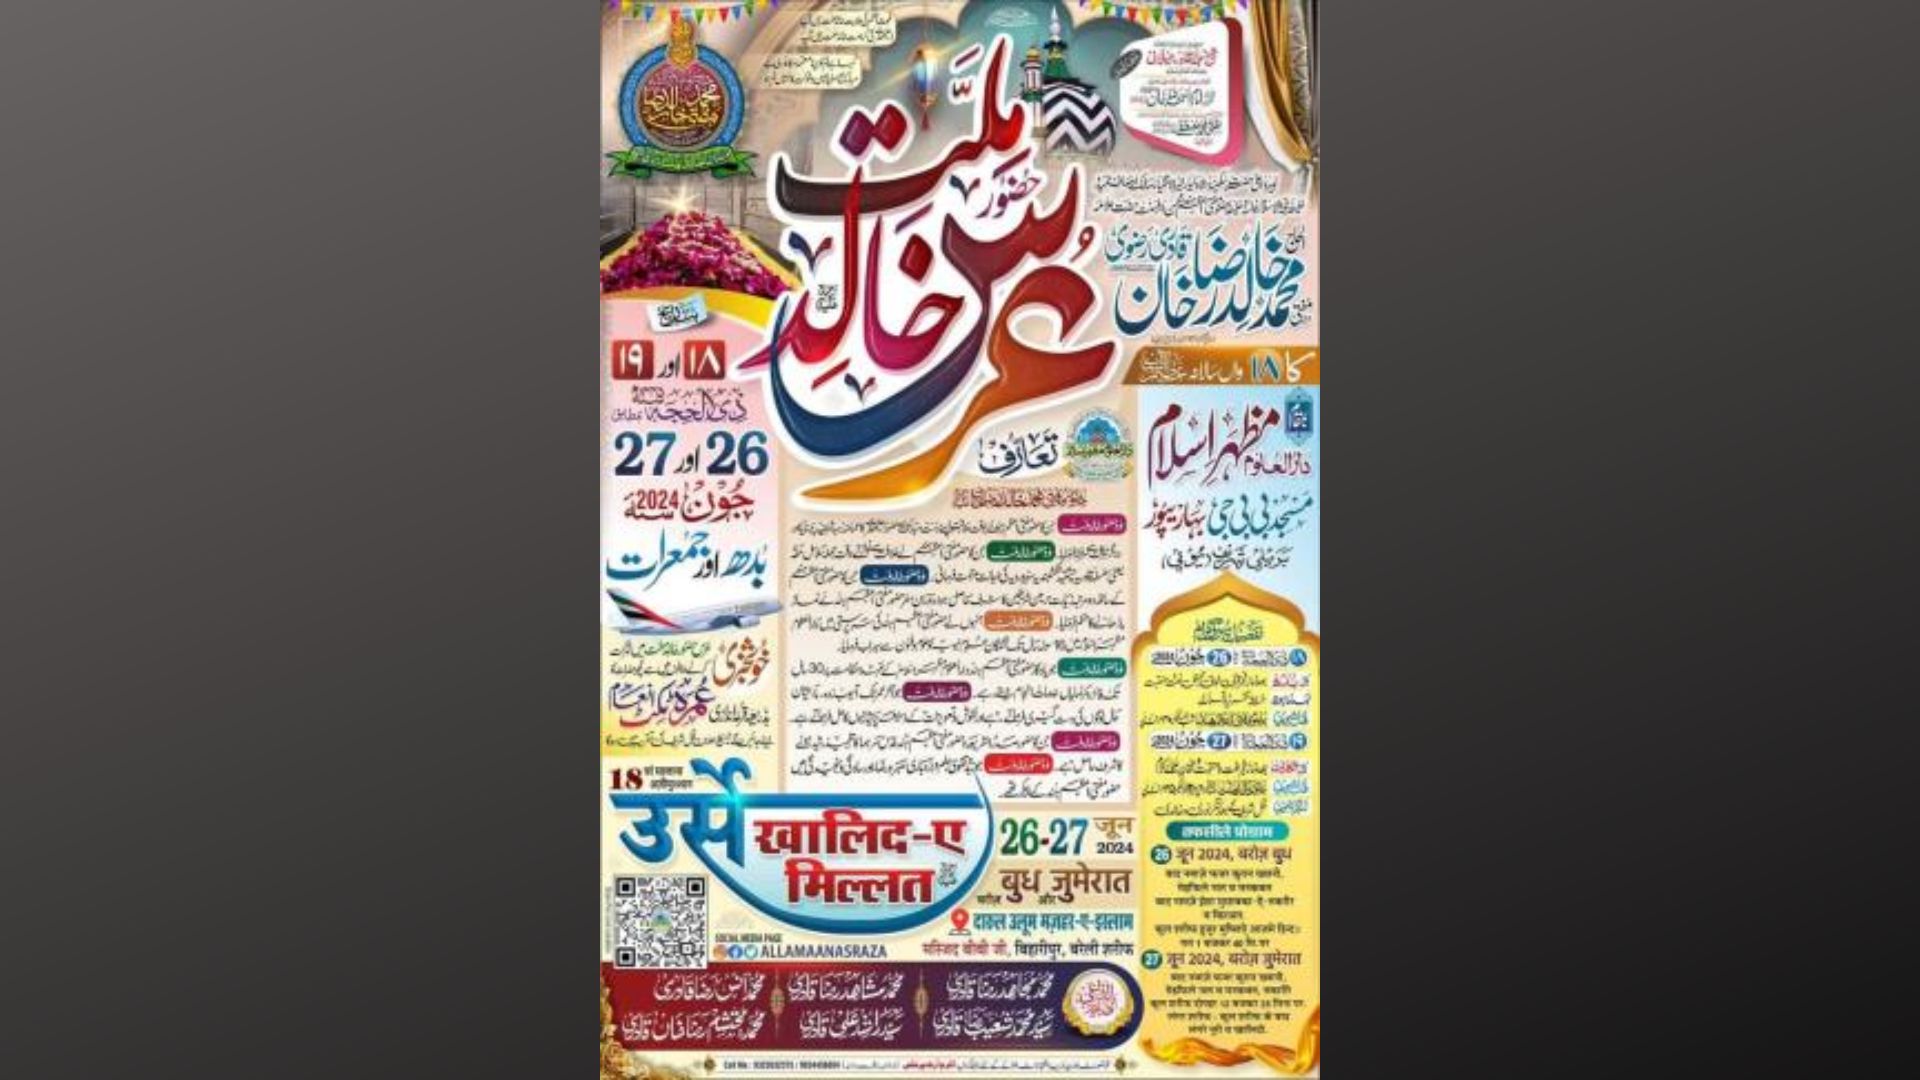 बरेली: उर्स-ए-खालिदी का पोस्टर जारी, 27 जून को होगा कुल